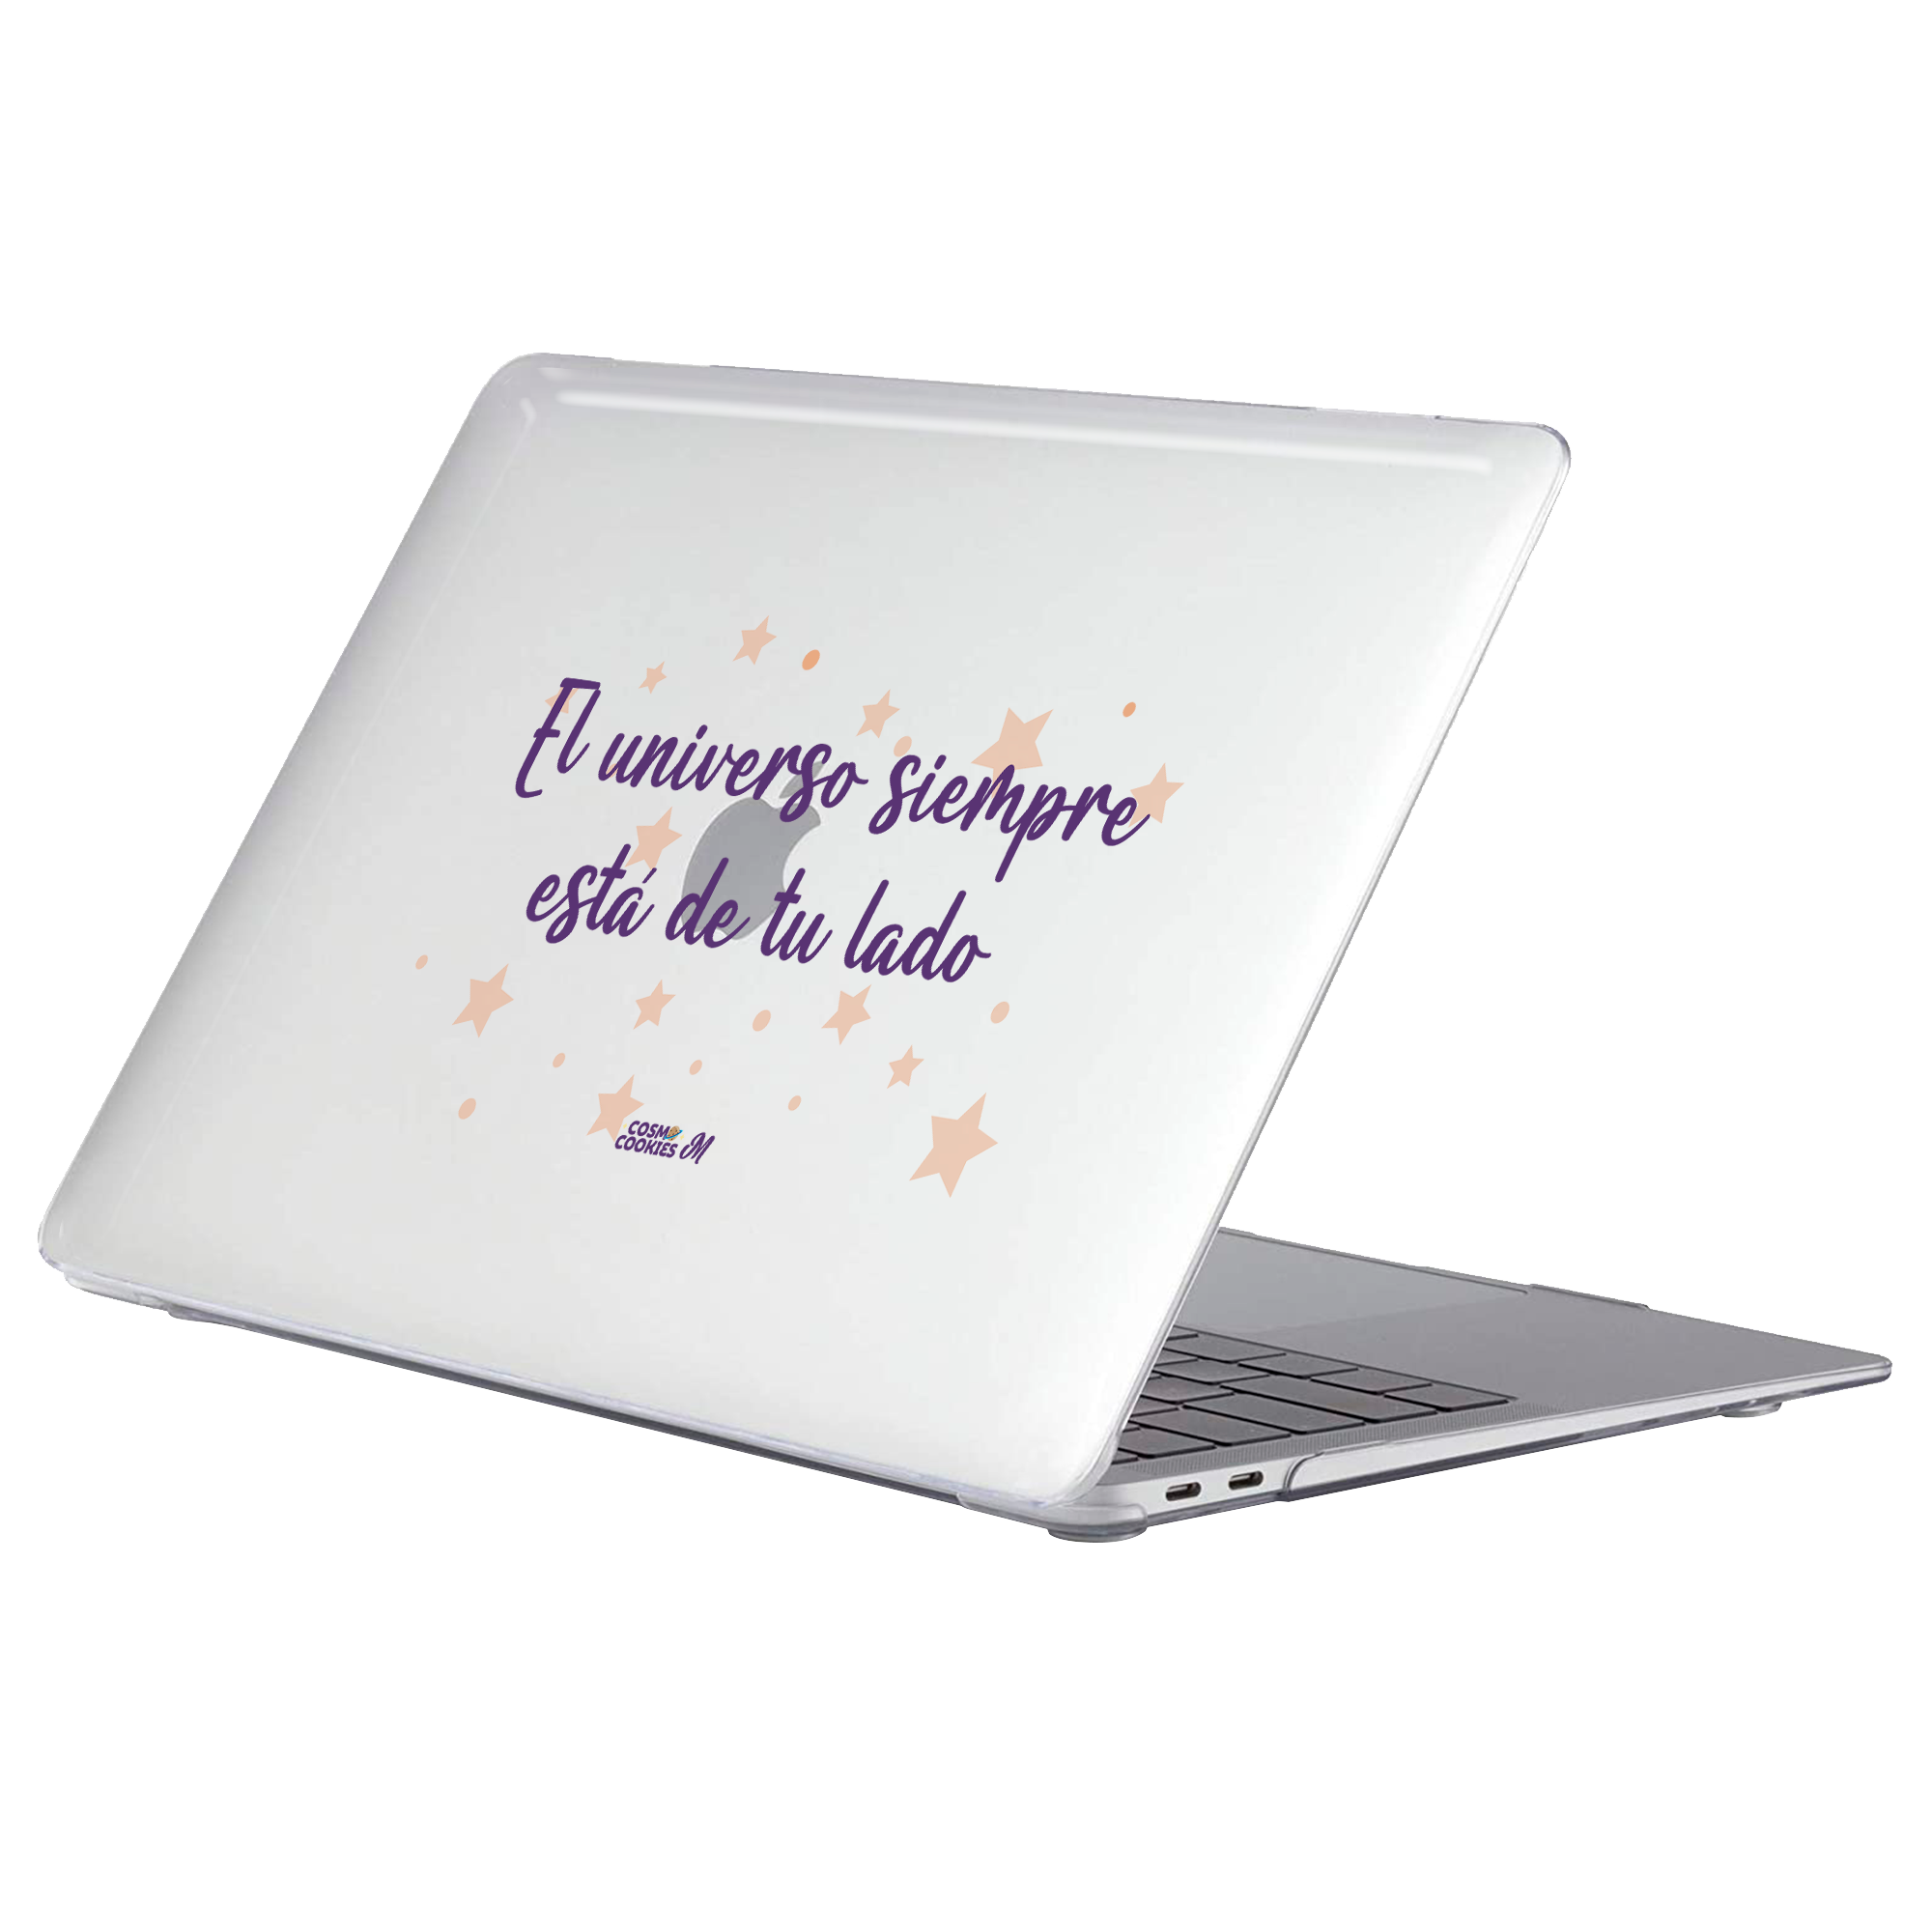 el universo a tu favor MacBook Case - Mandala Cases